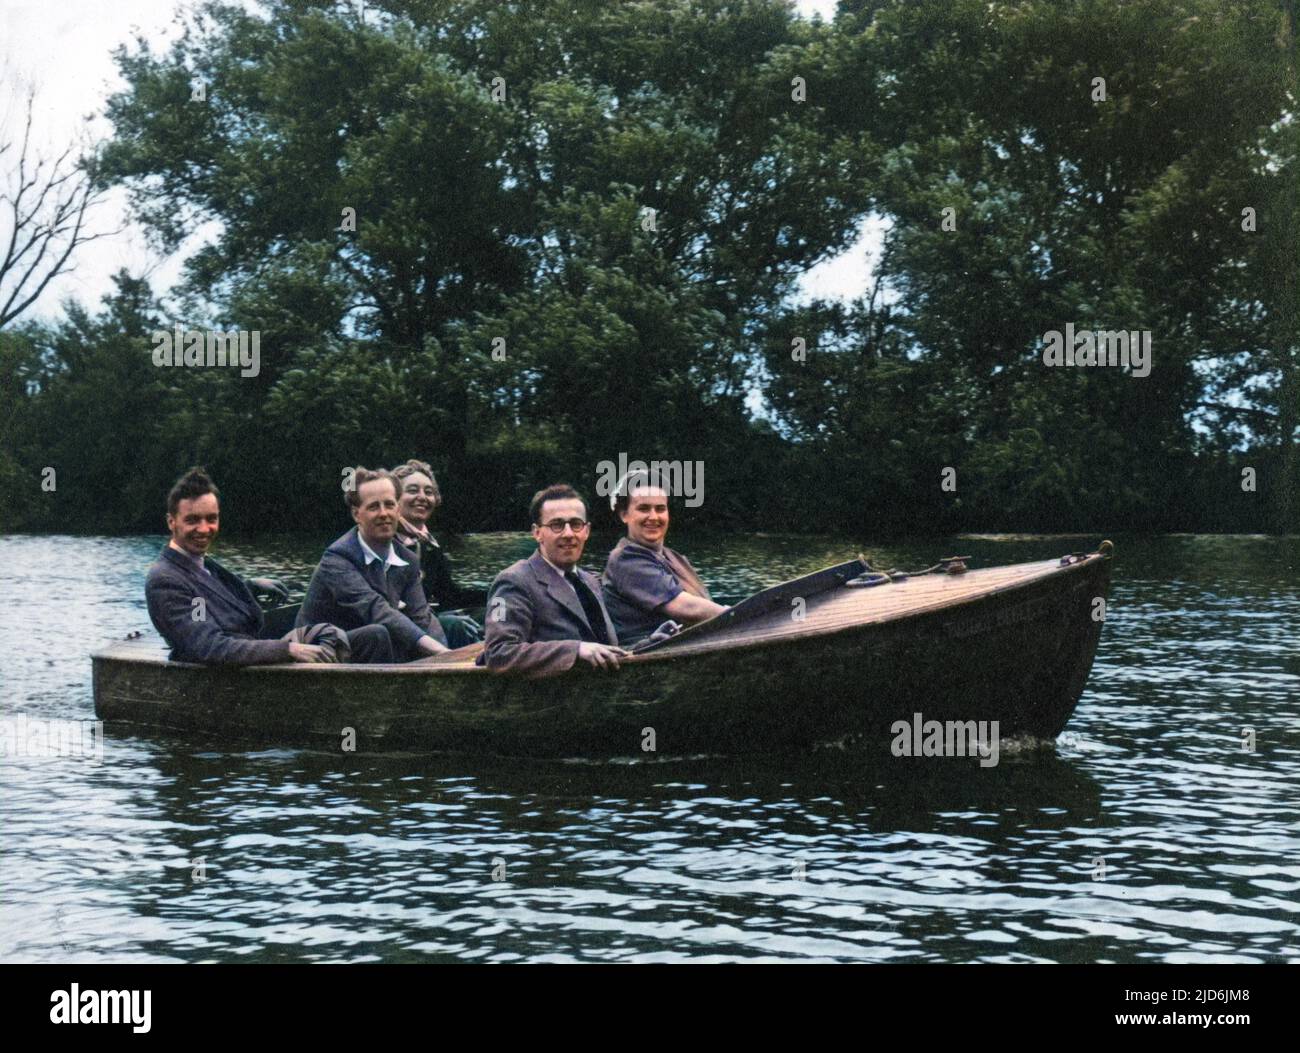 Fünf Freunde bei einem sehr kleinen Motorstart ('The Bridge Belle 2') machen einen fröhlichen Ausflug auf der Themse! Kolorierte Version von: 10794446 Datum: Anfang 1950s Stockfoto